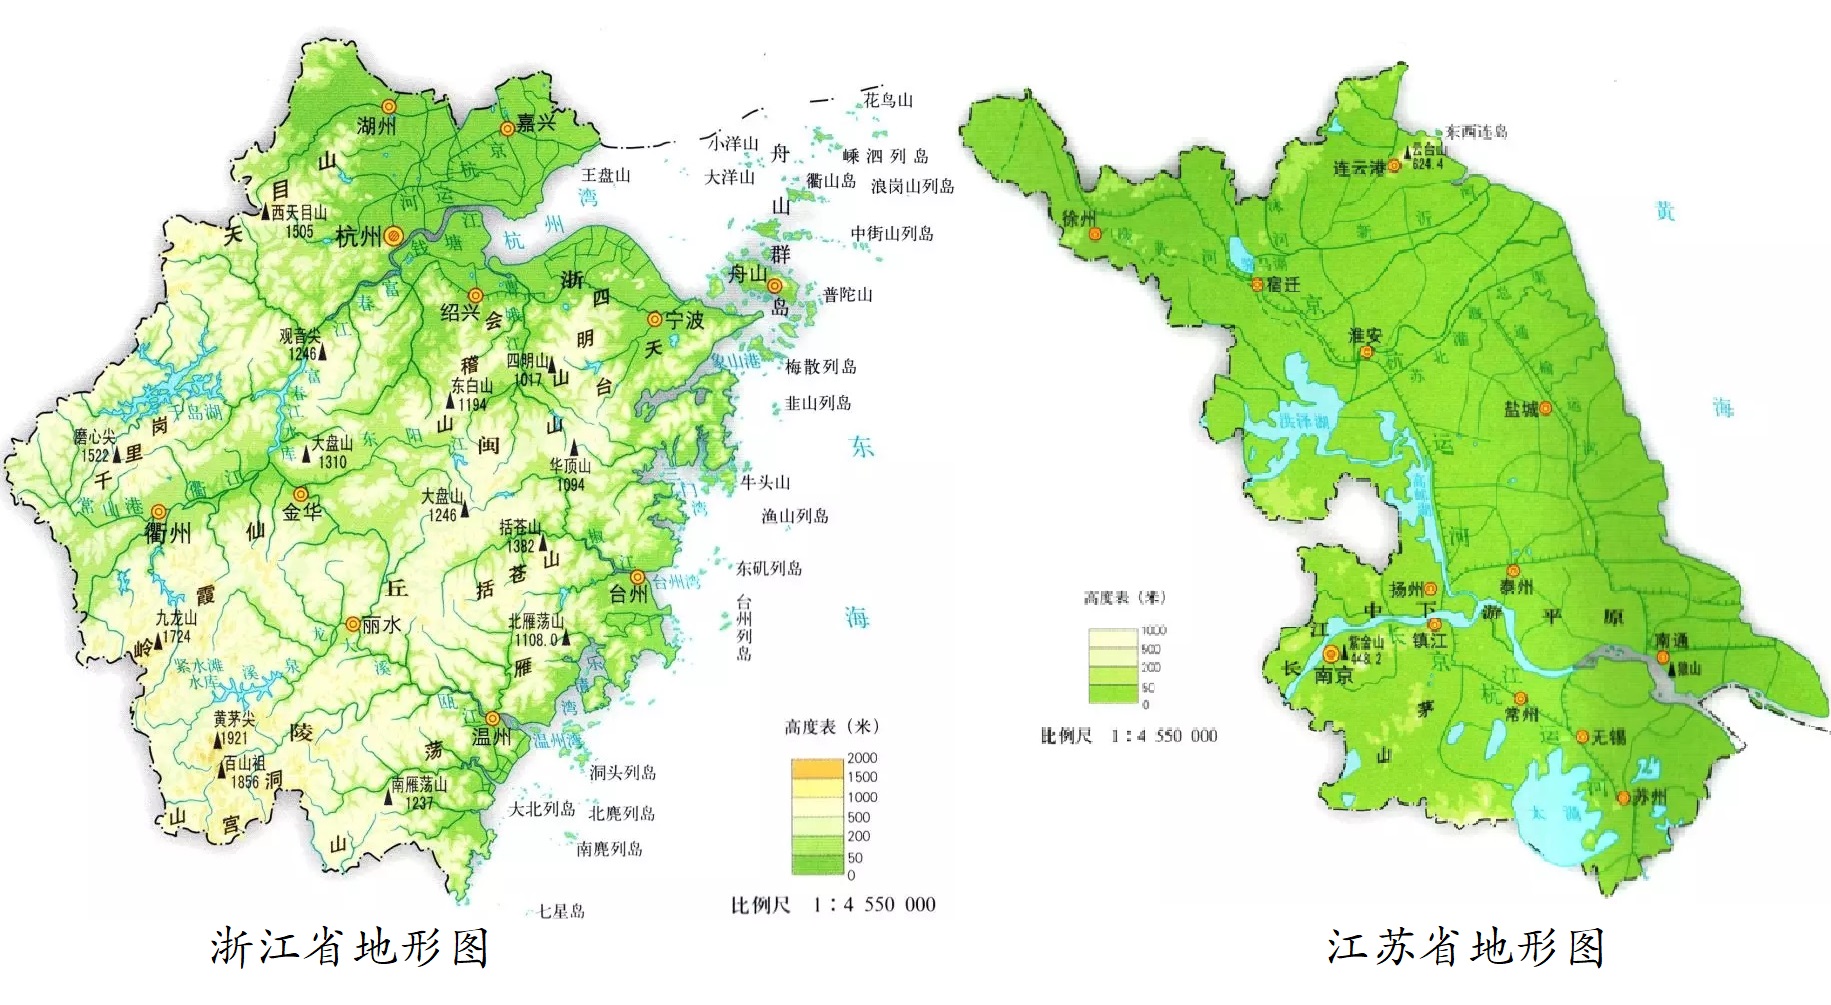 浙江省和江苏省的面积相差不大,但是两省的地形特征差异巨大